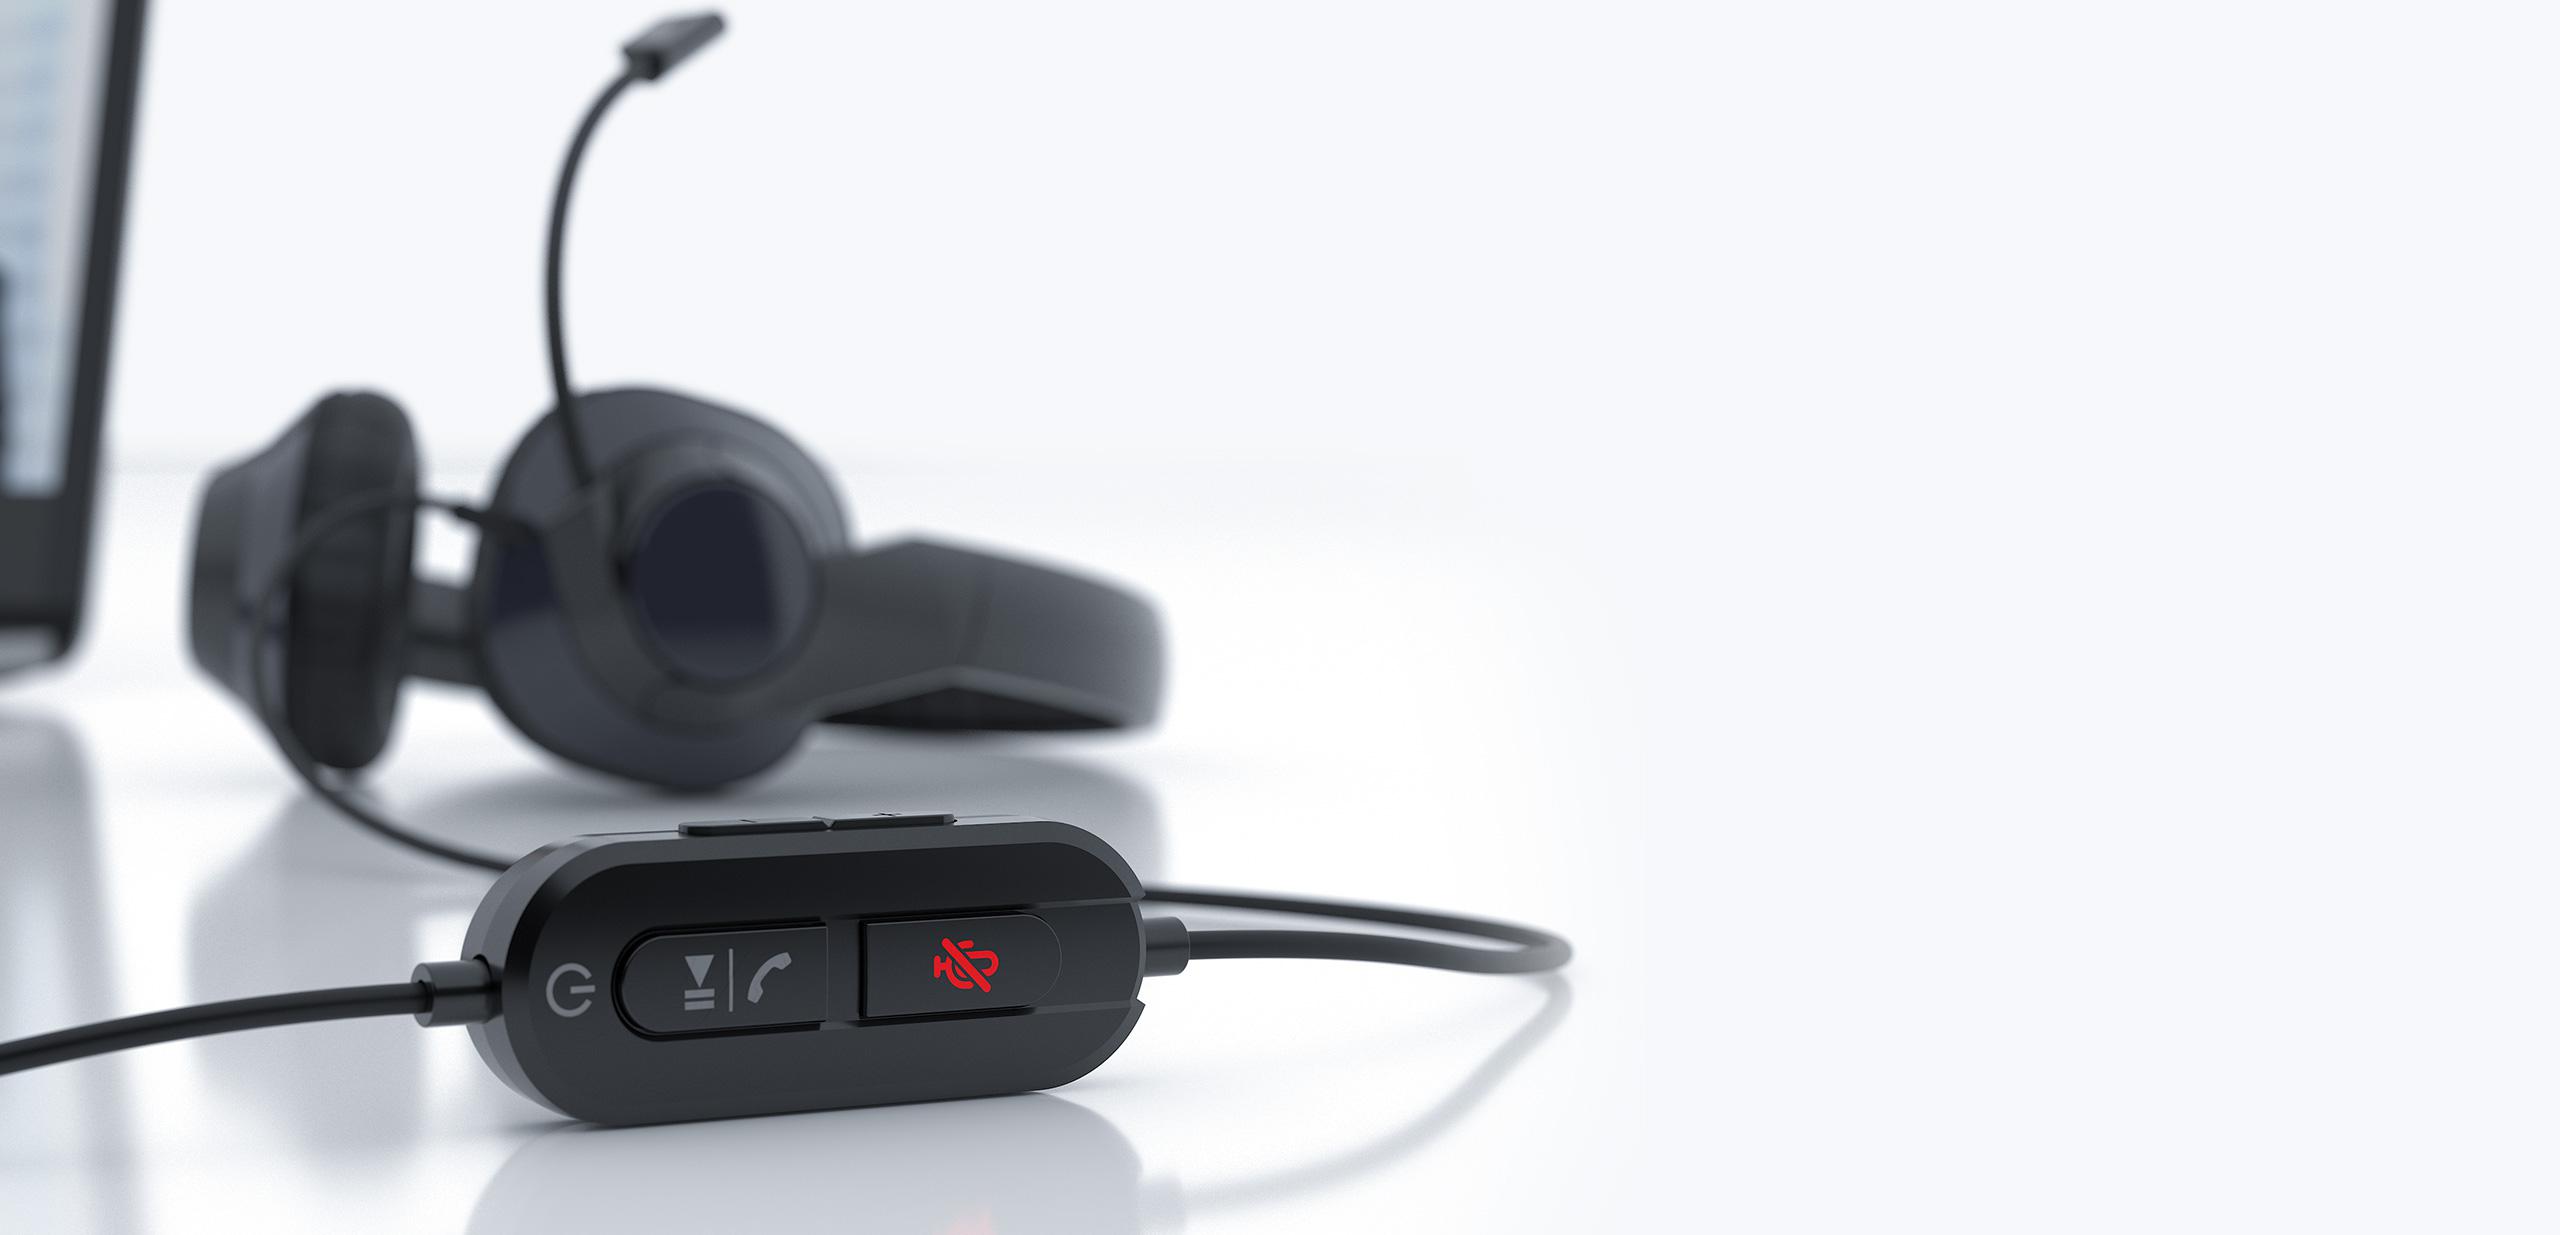 Zestaw słuchawkowy USB Creative HS-720 V2 - komunikuj się zawsze i wyraźnie: optymalizacja pod kątem spotkań online